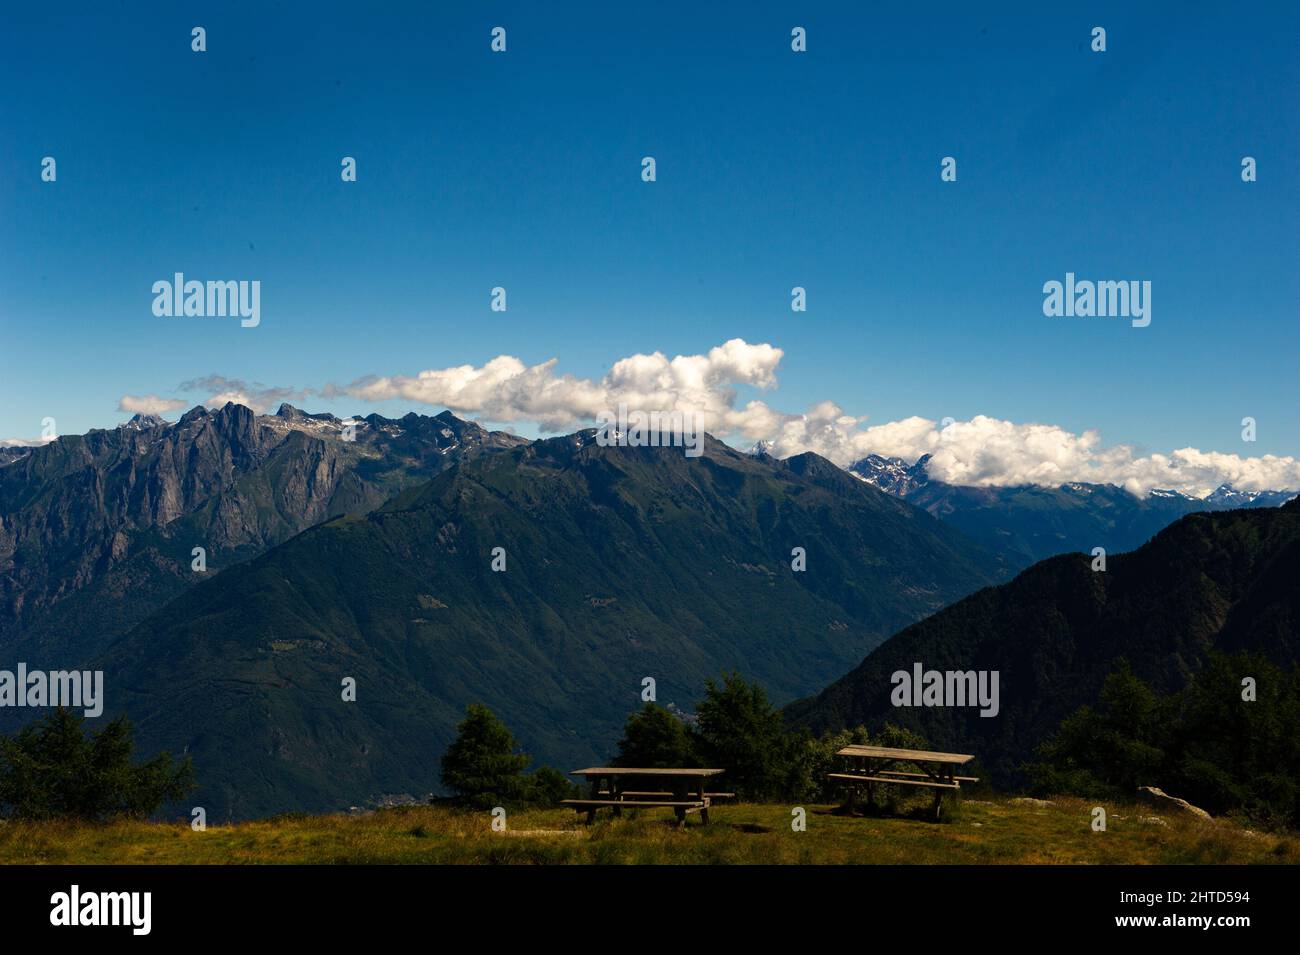 Europa, Italia, Lombardia, provincia di Lecco, paesaggio dalla cima del Monte Legnoncino. Foto Stock